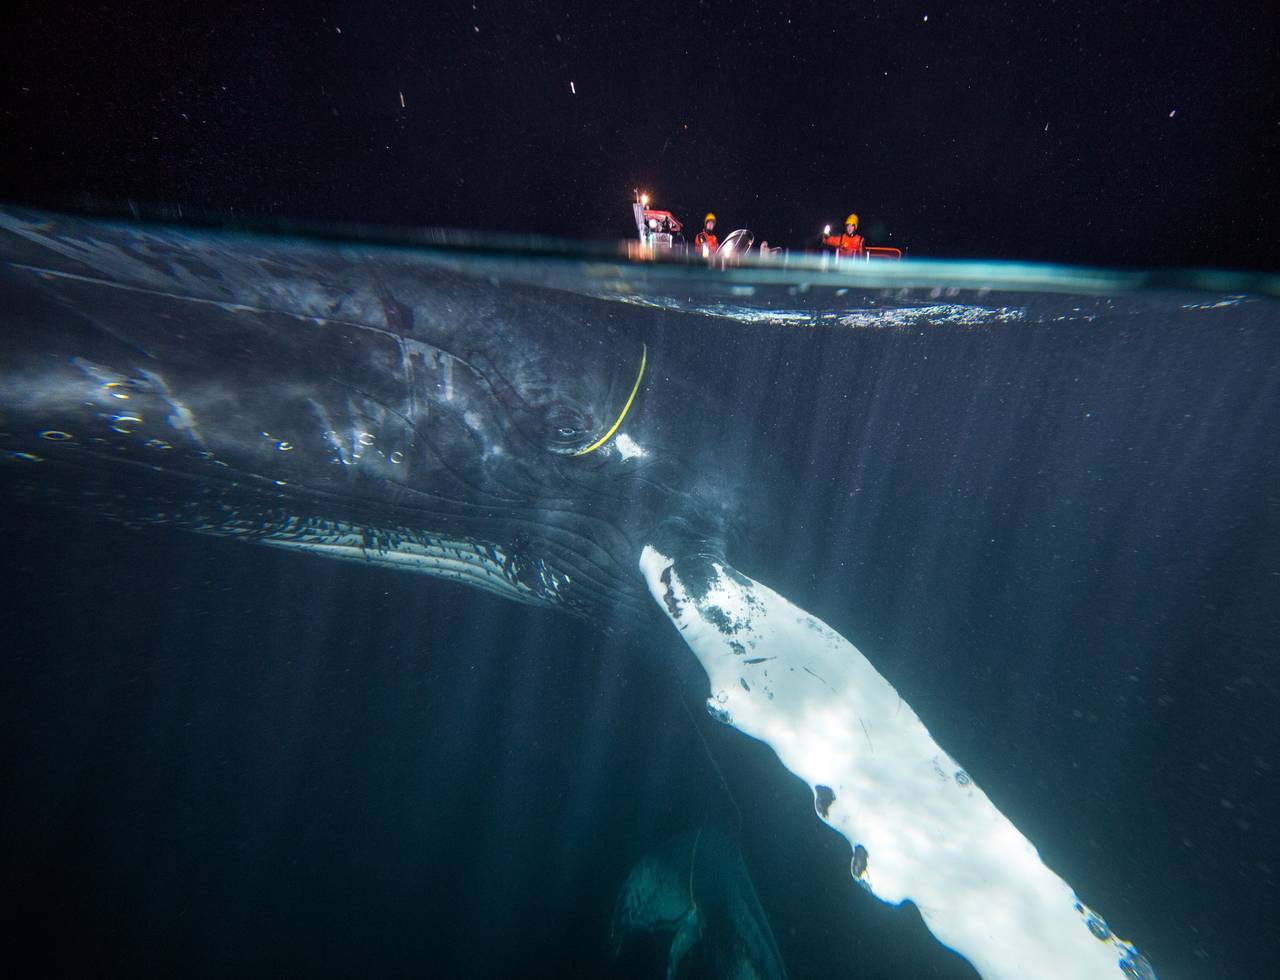 Bilde tatt halvveis under vann viser knølhval med gul kabel, og du kan si vidt skimte hodene til menneskene som jobber for å redde hvalen.